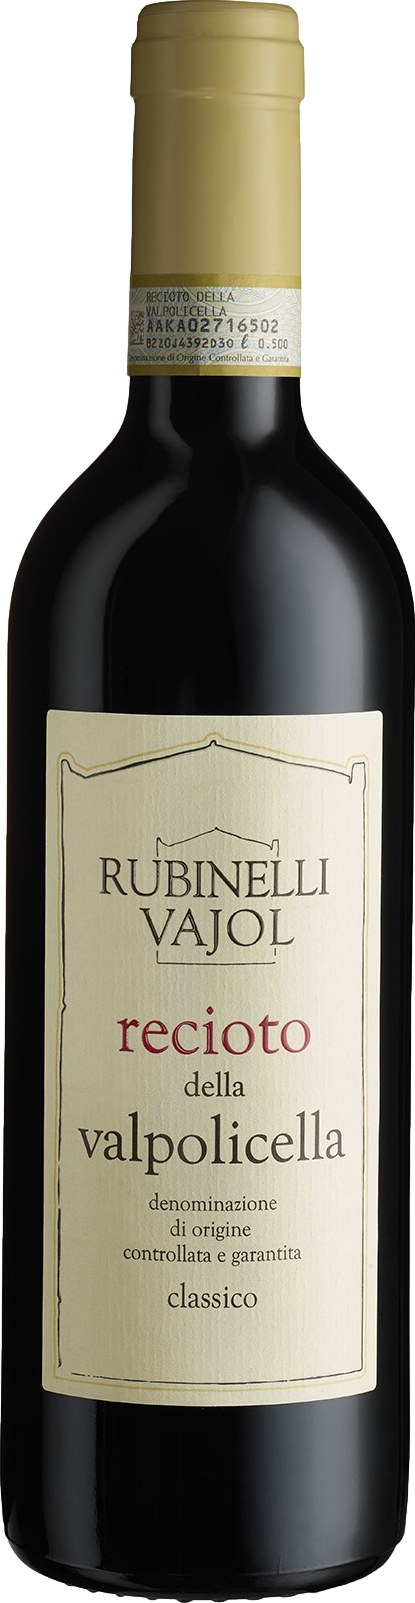 Rubinelli Vajol Recioto della Valpolicella Classico 2015